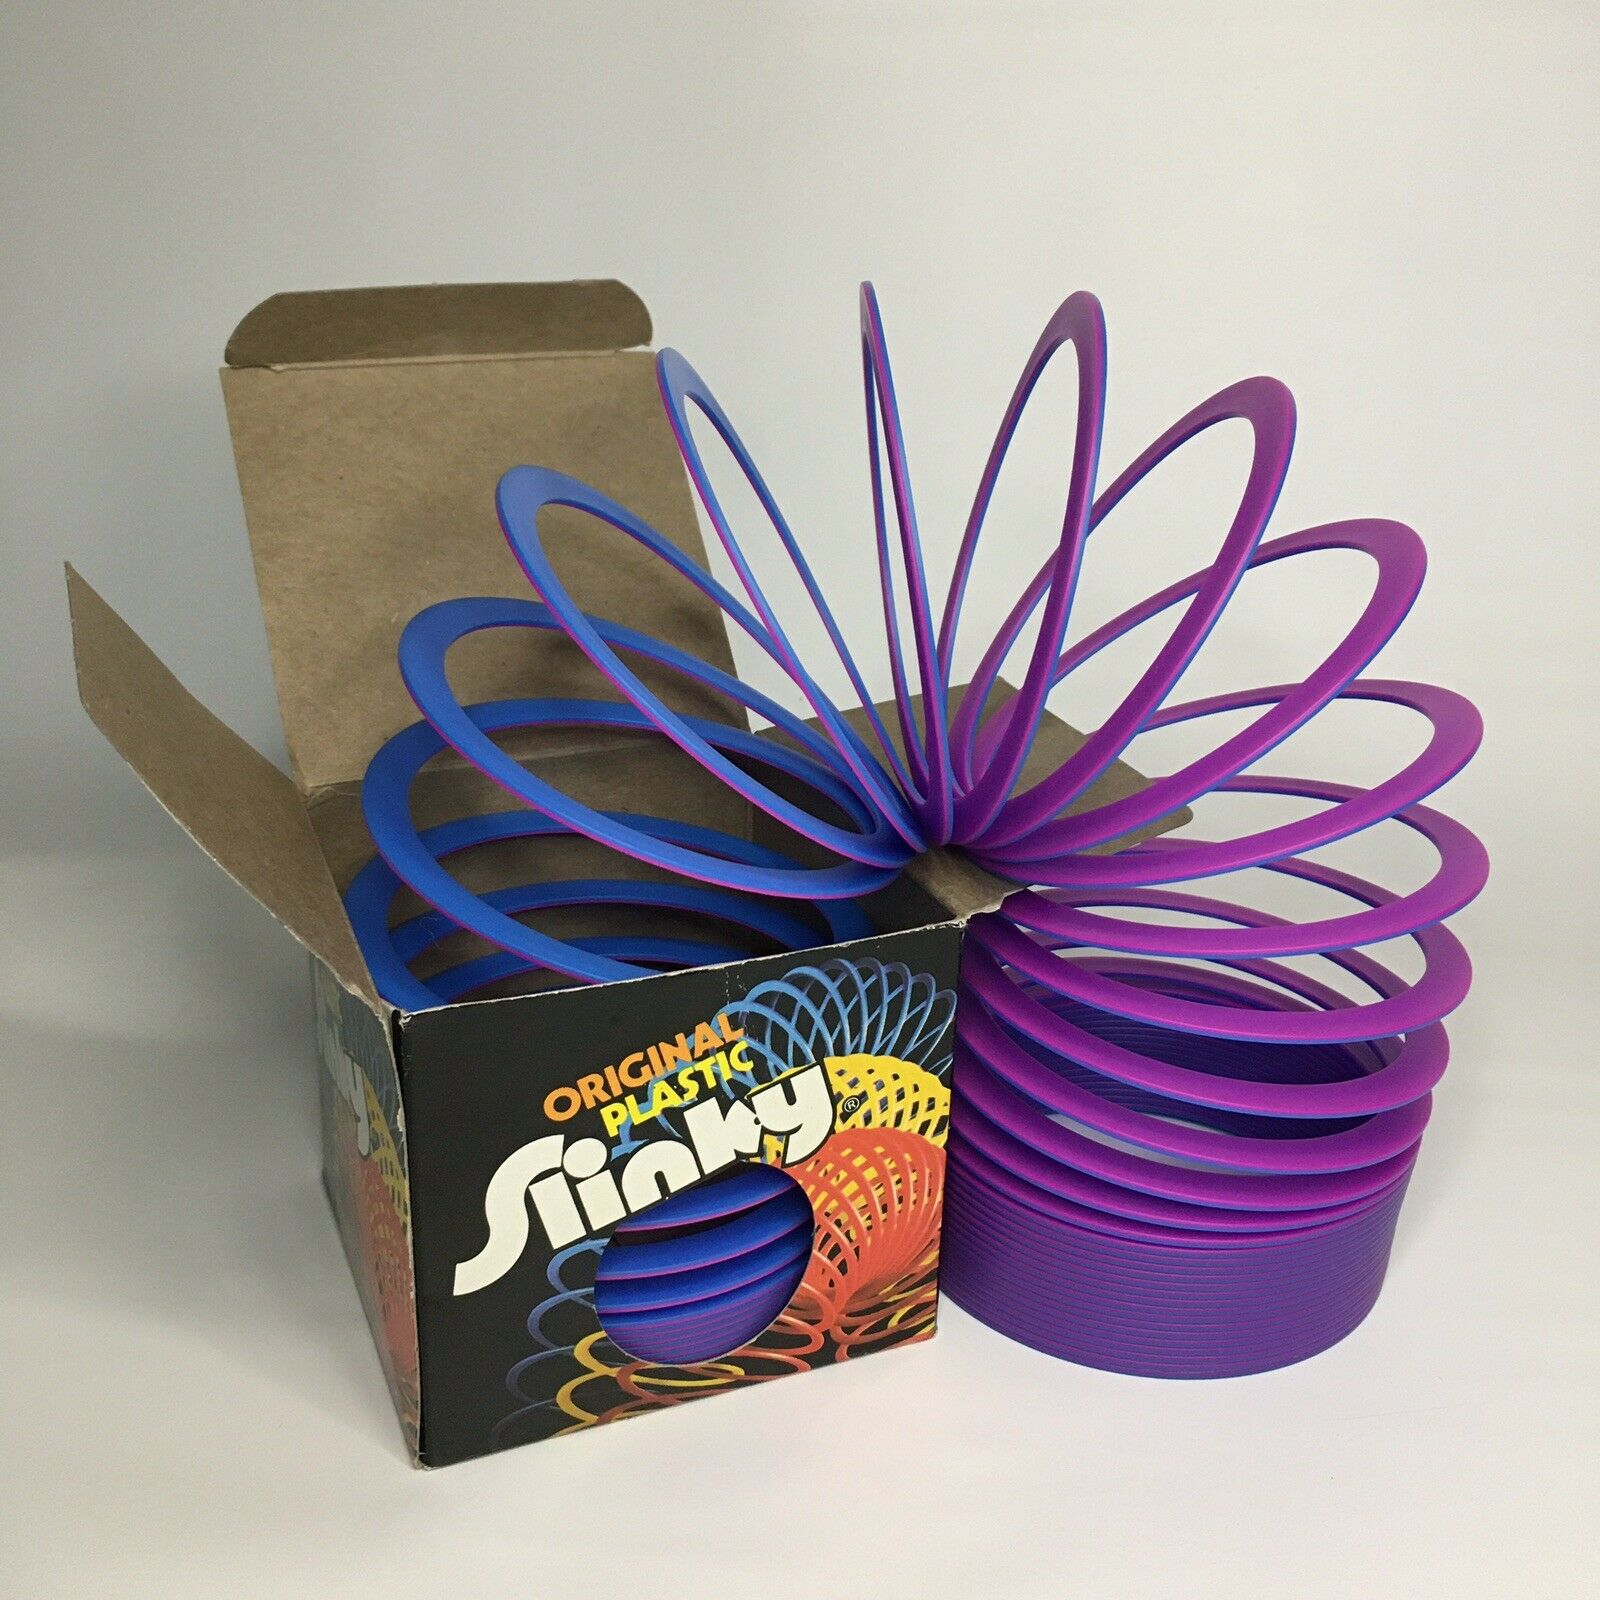 Authentic Vintage Original Purple Plastic Slinky